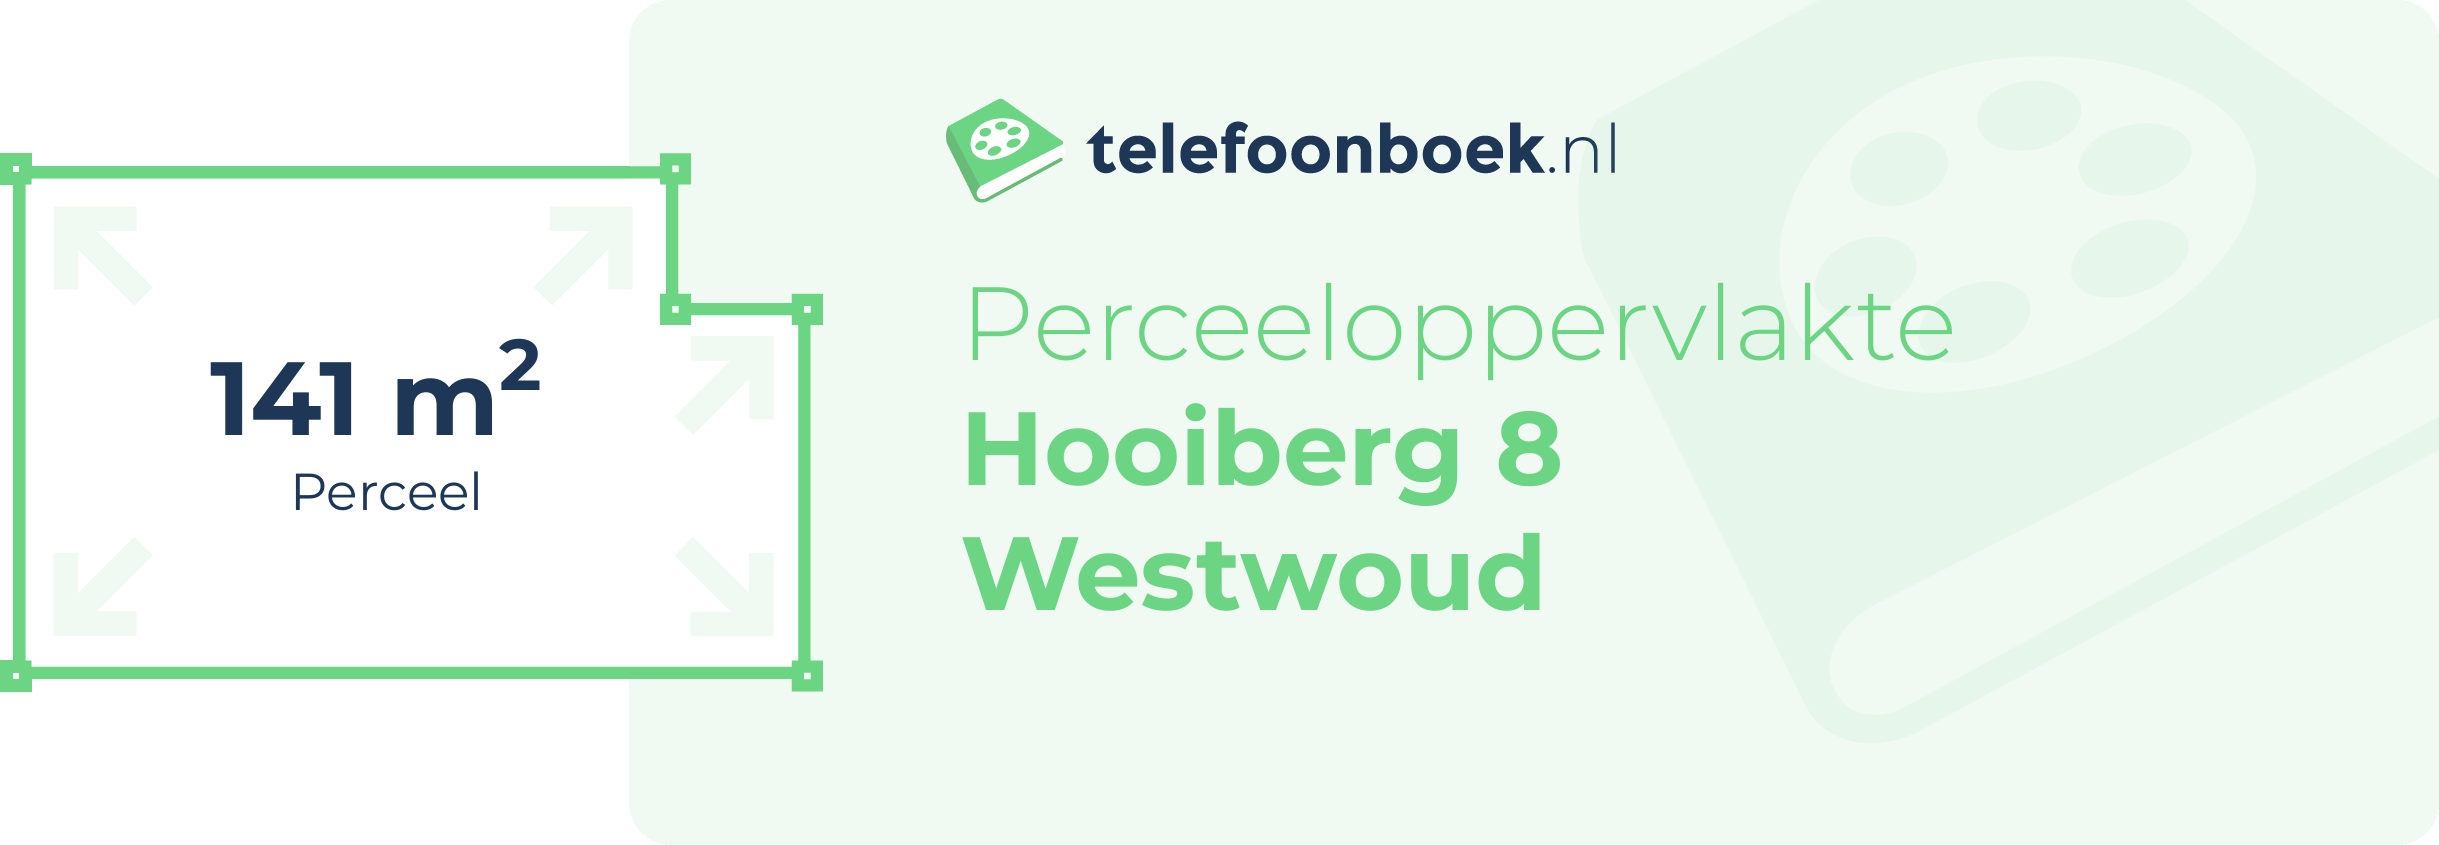 Perceeloppervlakte Hooiberg 8 Westwoud